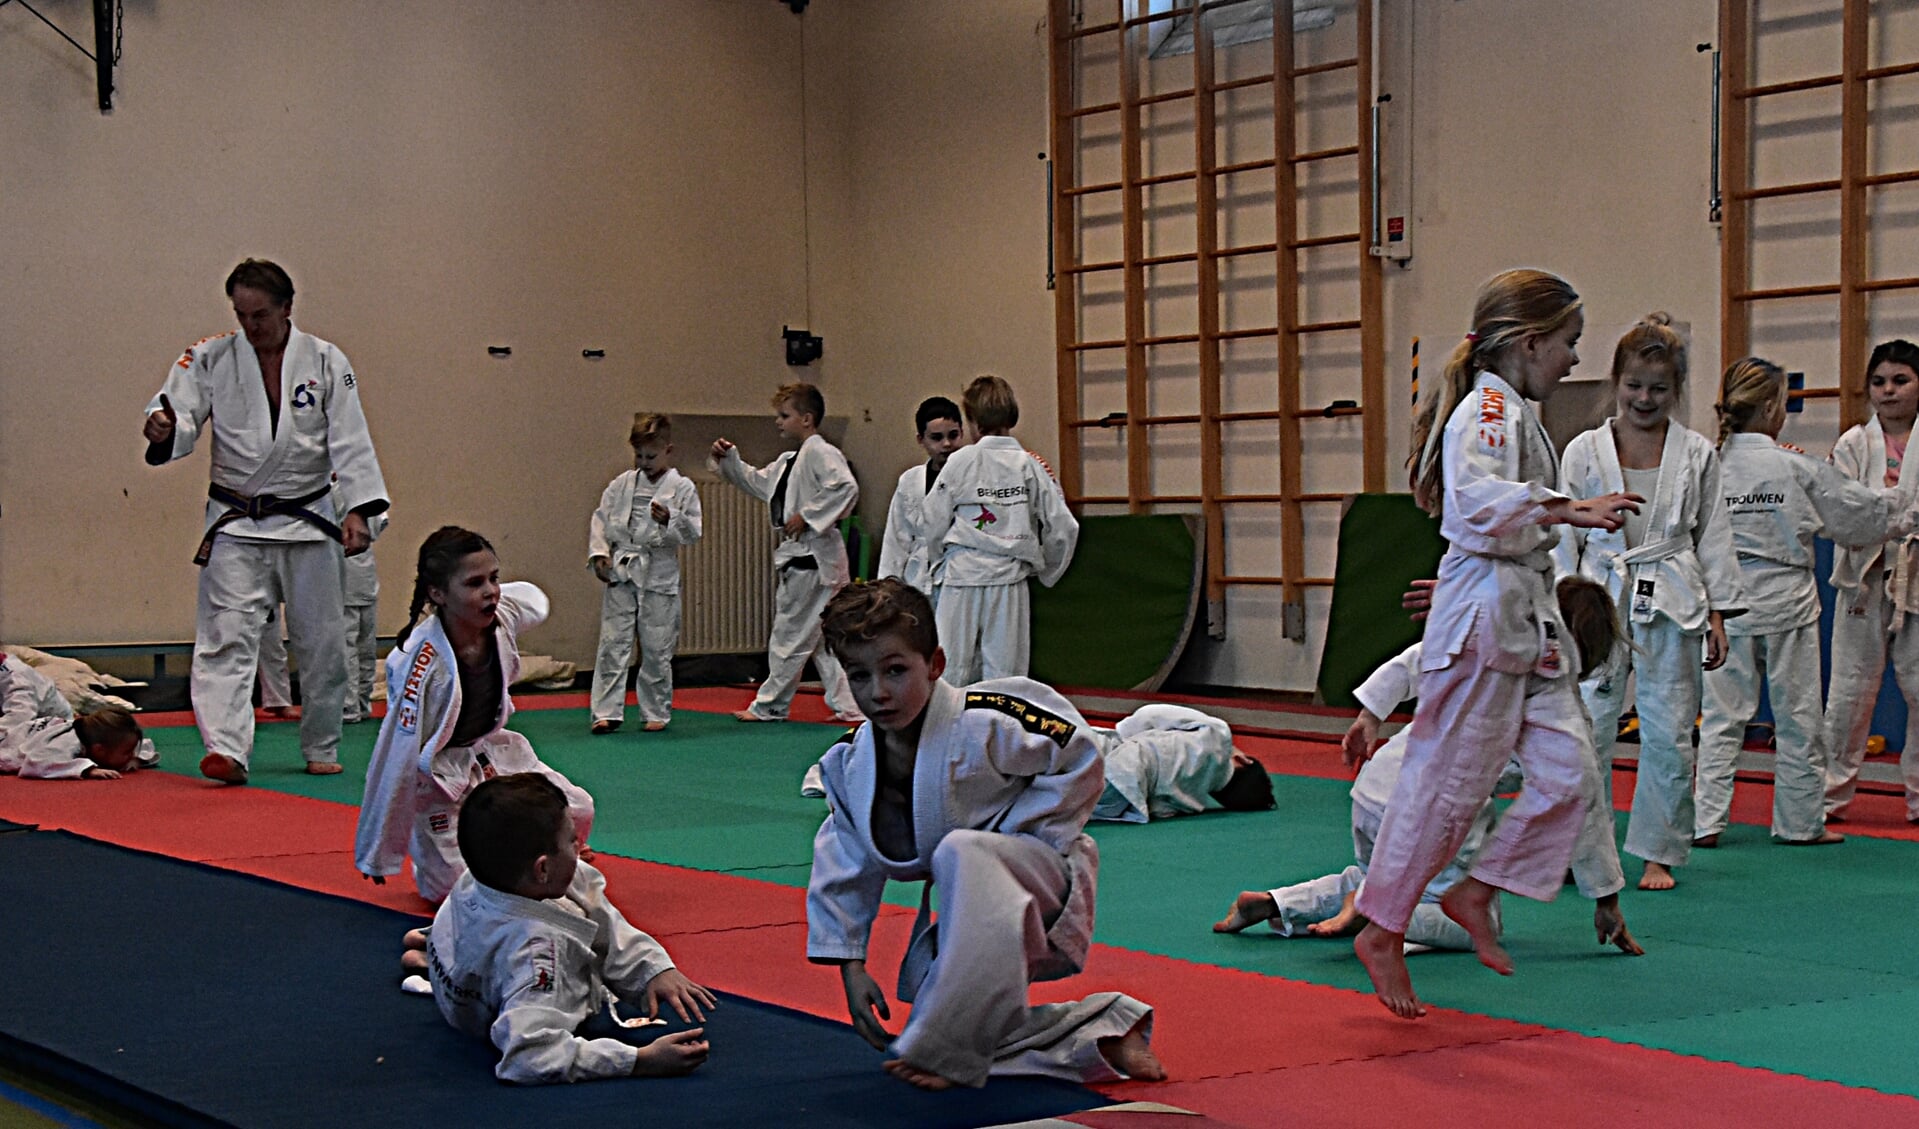 De Christelijke Opleidingsschool biedt als eerste in Katwijk judoles. aan. | Foto: Piet van Kampen